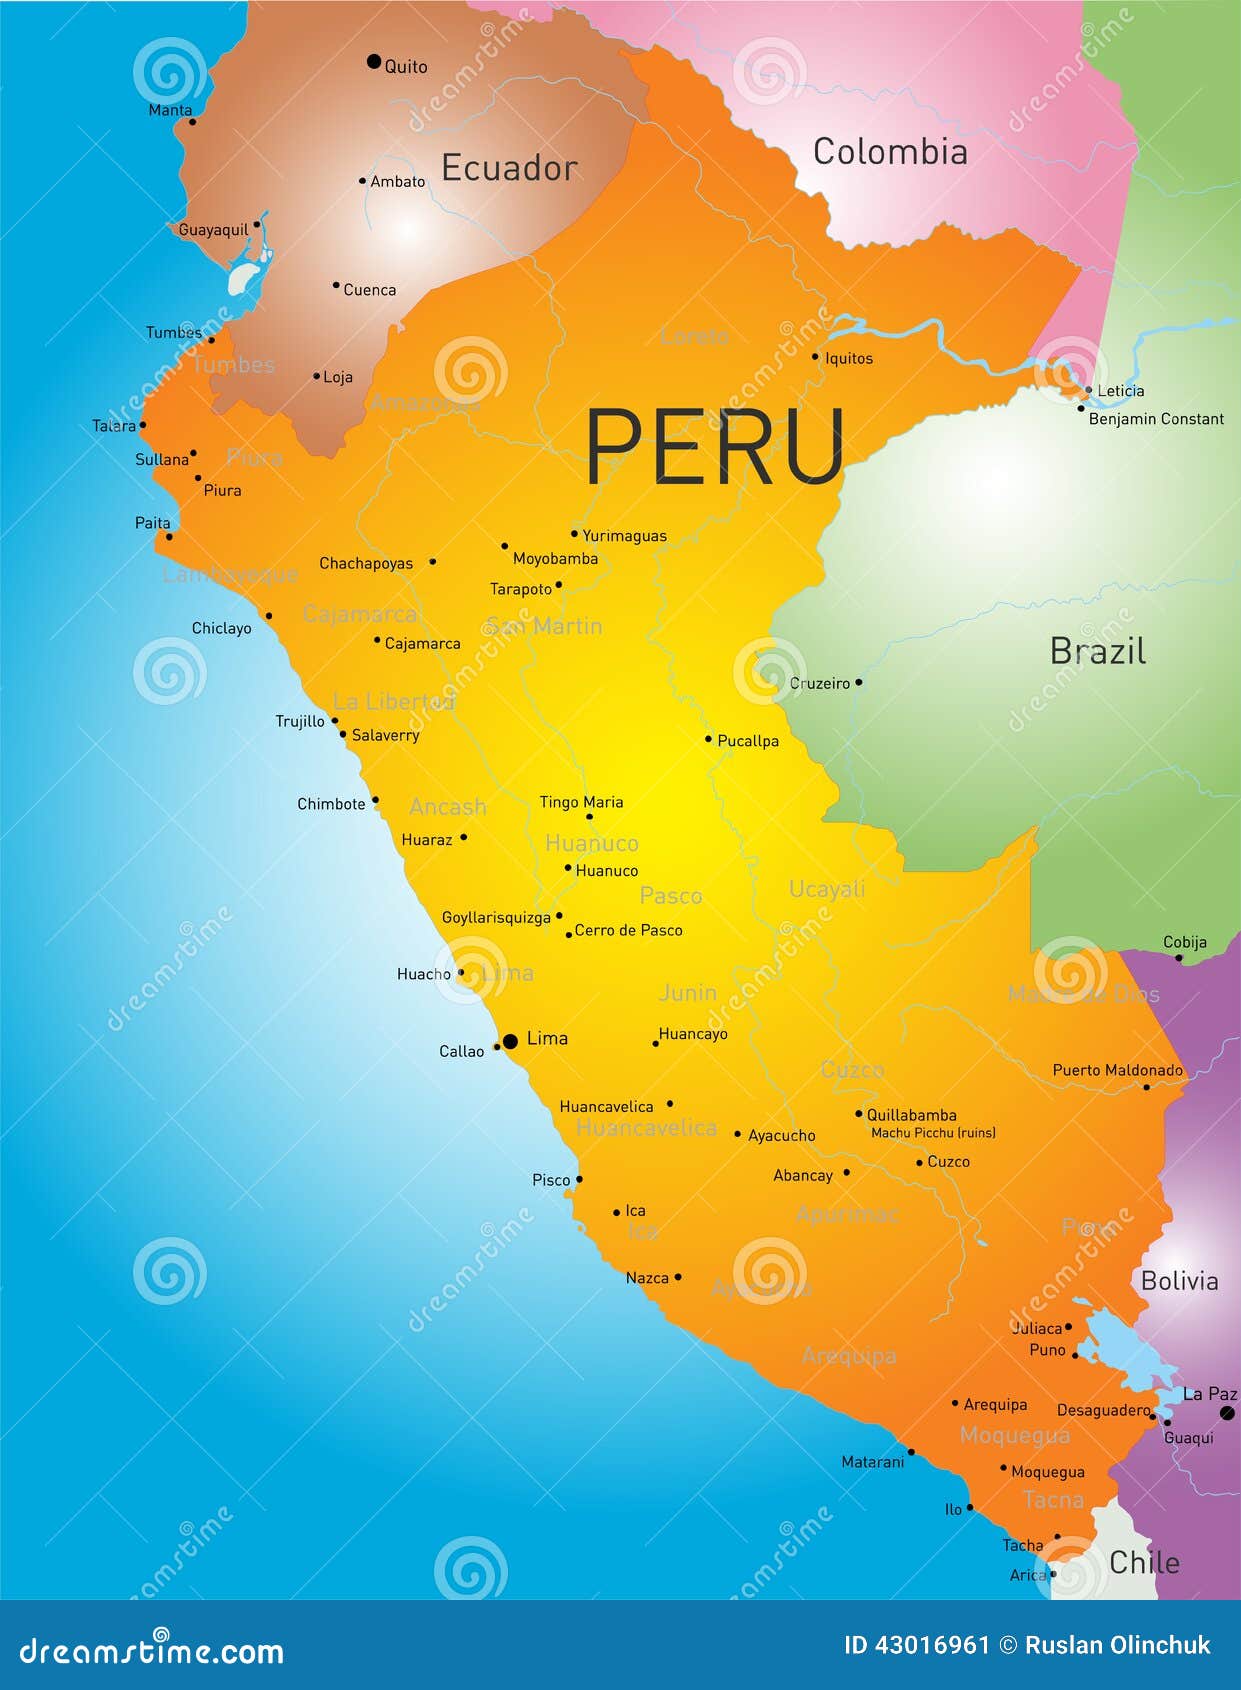 秘鲁国家的地图展示